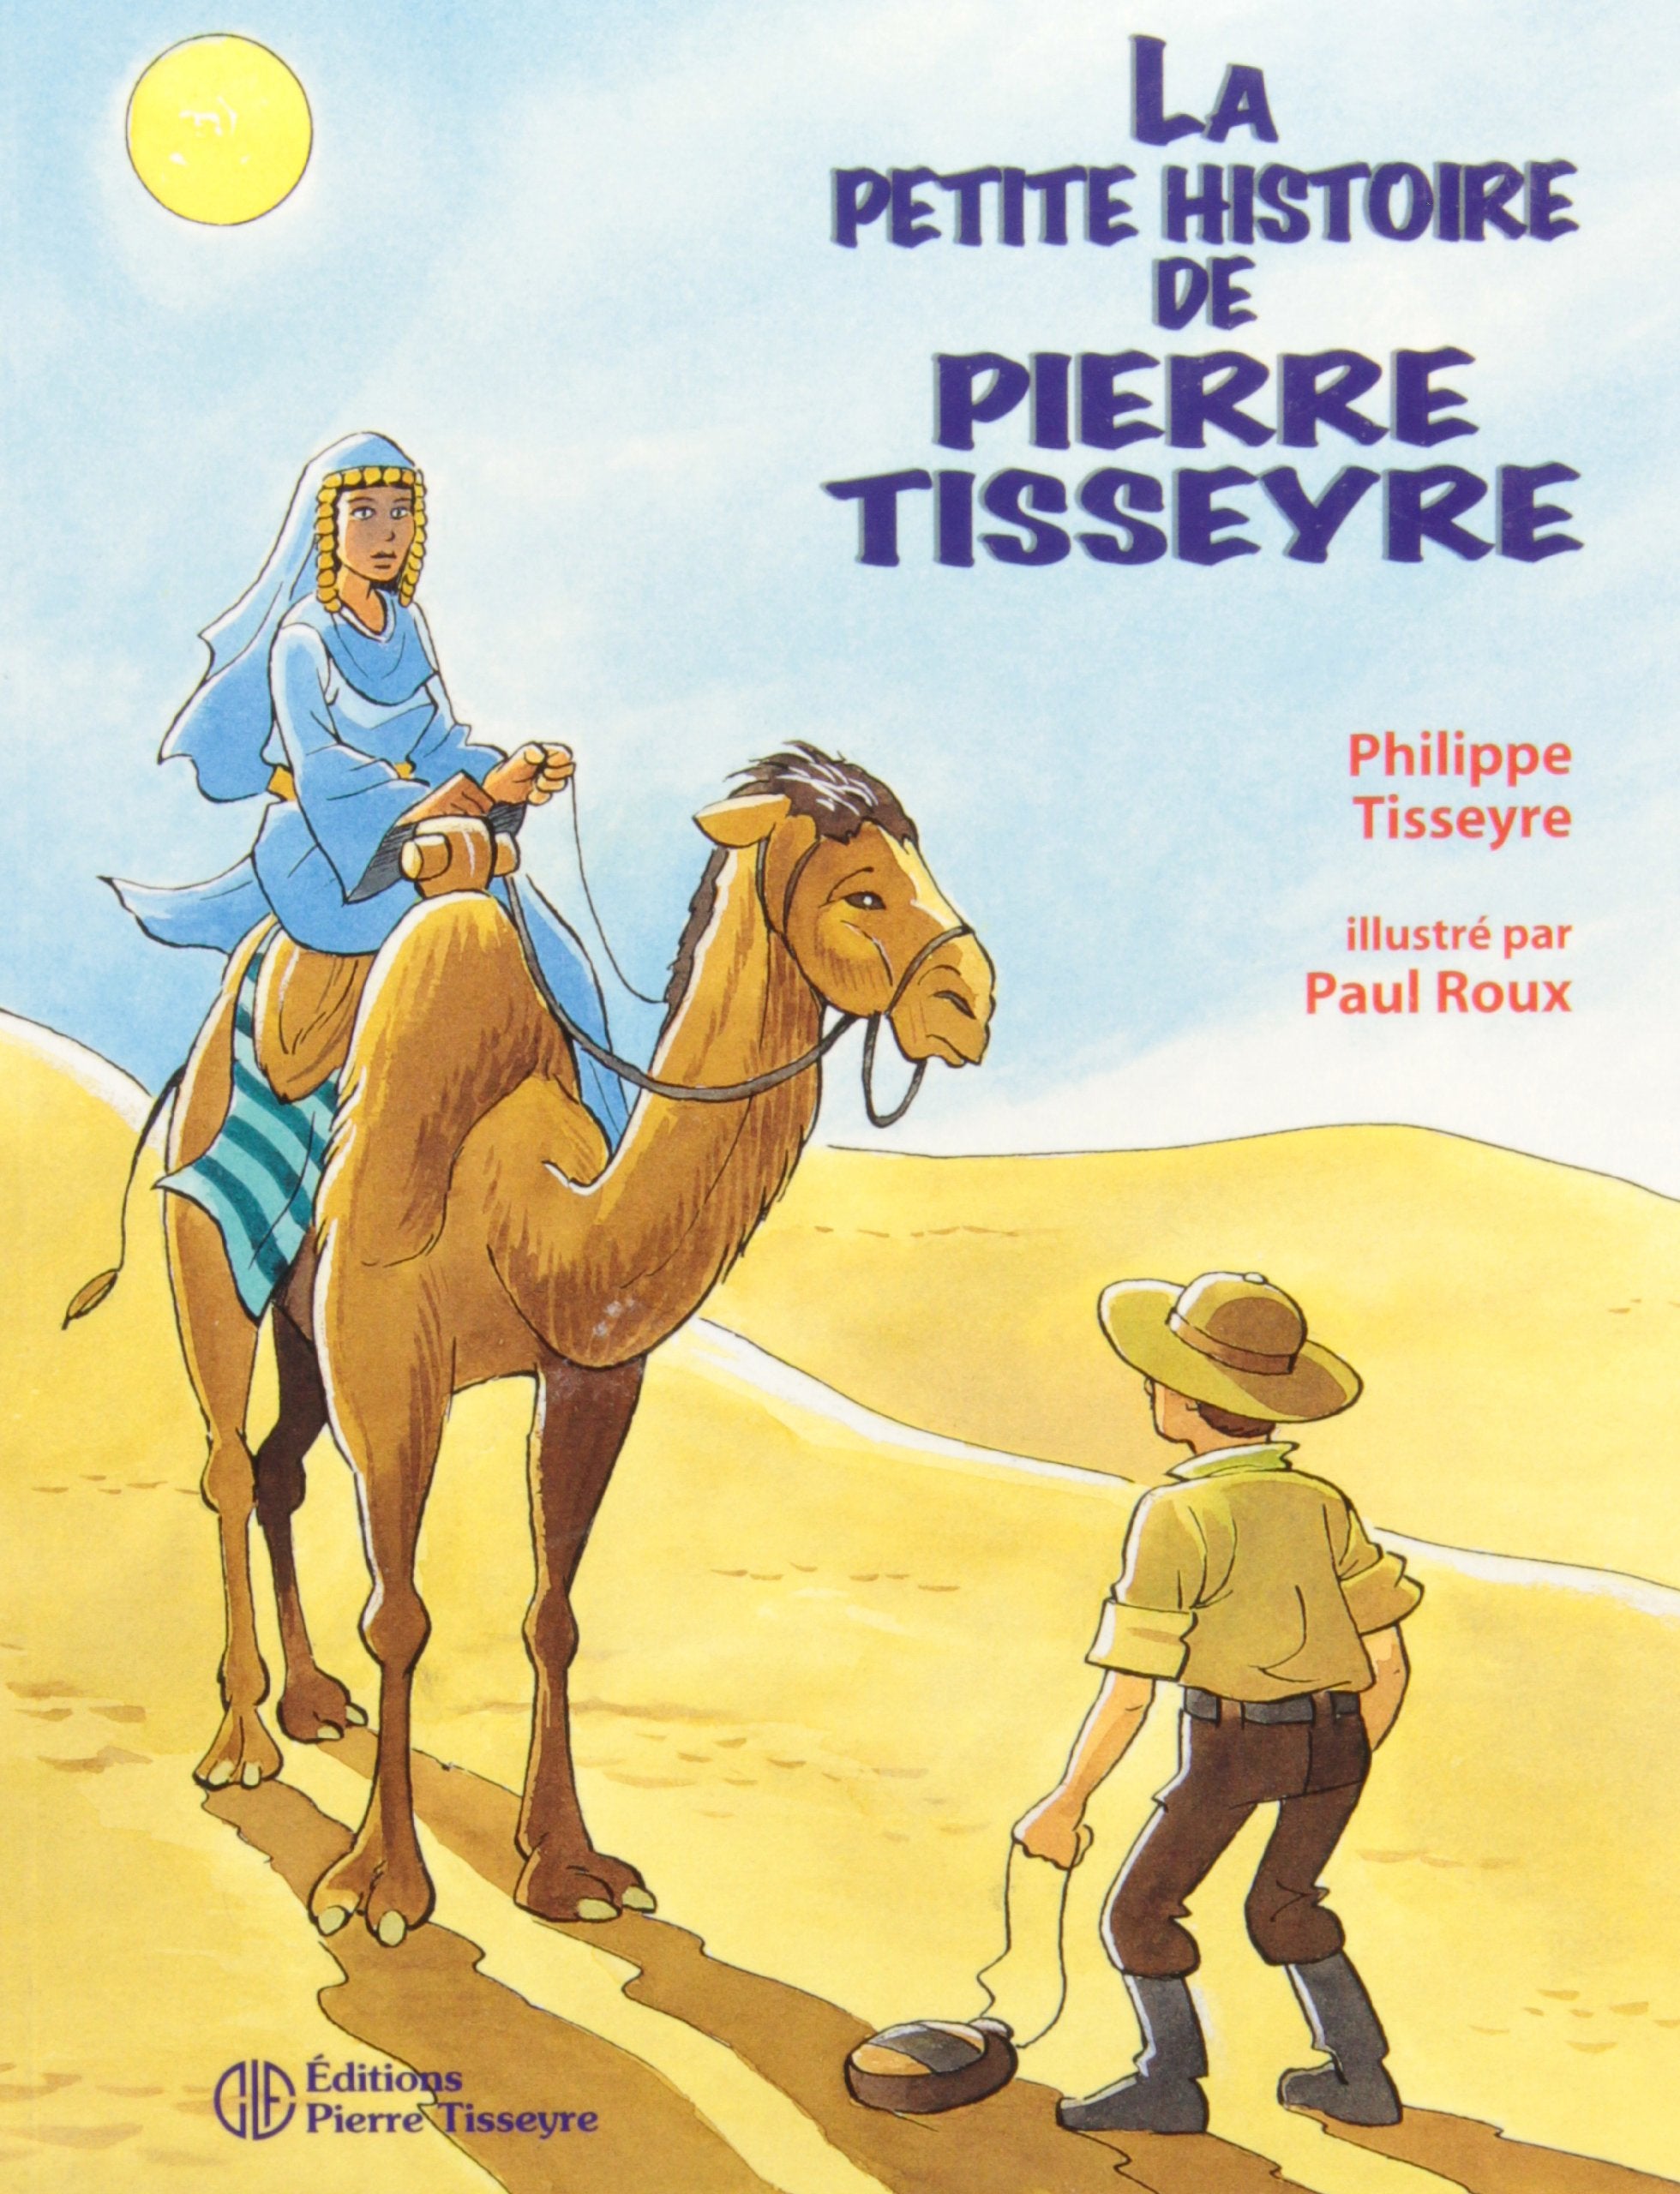 Livre ISBN 2890516709 La petite histoire de Pierre Tisseyre (Pierre Tisseyre)